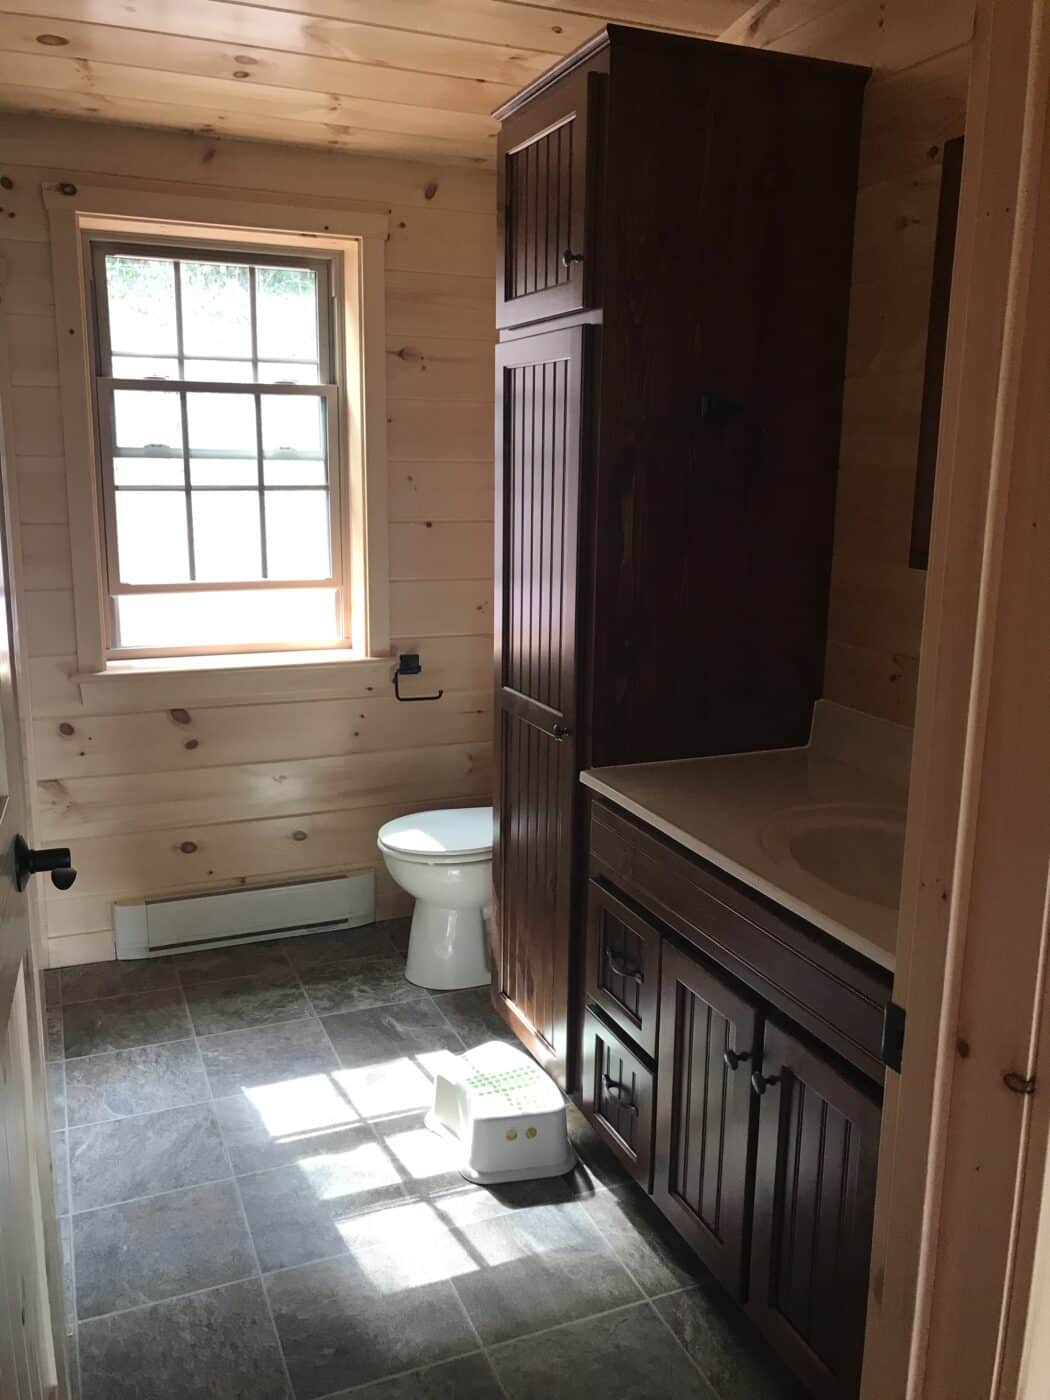 beautifully furnished bathroom inside a prefab log cabin in parson west virginia